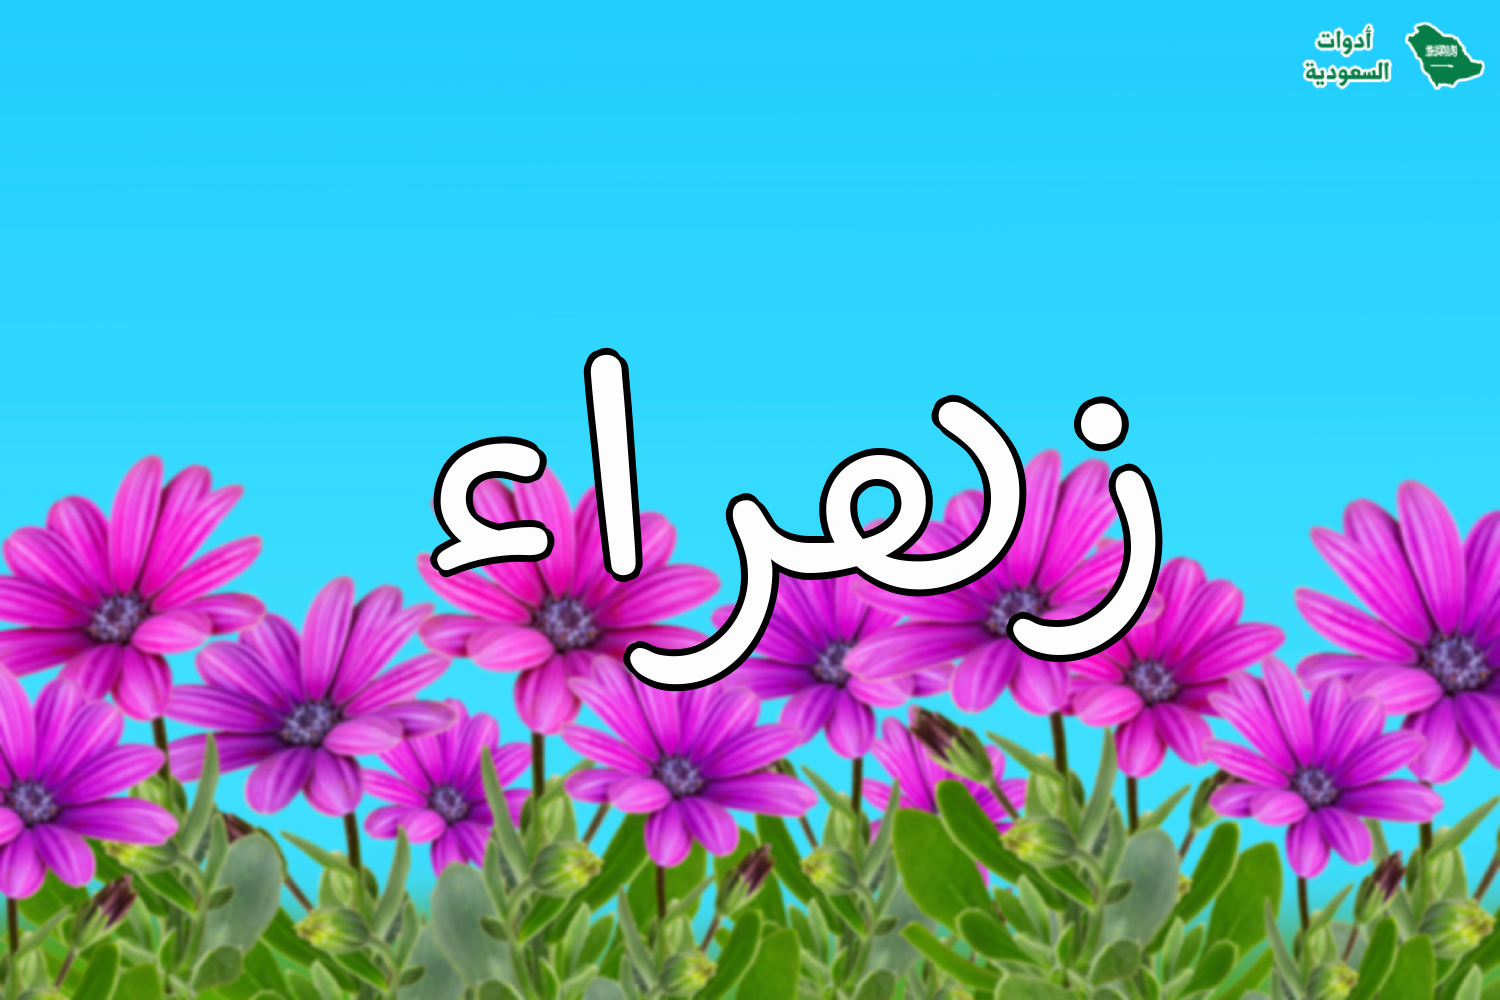 اسم زهراء على صورة ضمن خدمة اكتب اسمك على صور ورود